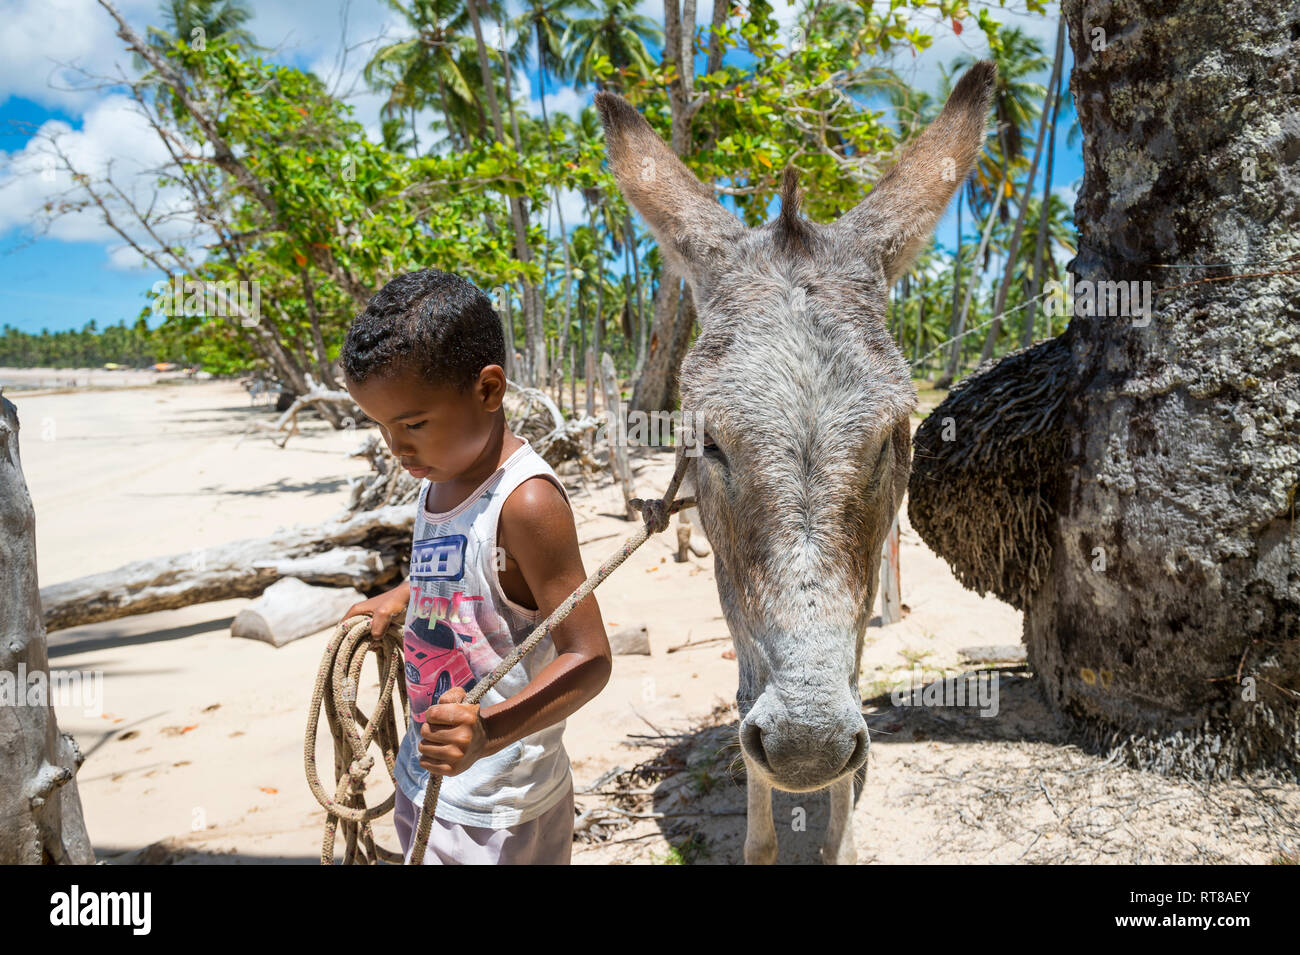 BAHIA, BRASILIEN - 11. MÄRZ 2017: Eine funktionierende Maultier steht mit einem jungen brasilianischen Jungen auf der palmengesäumten Ufer von einem Strand in der Fernbedienung die "Nordeste" Region fahren. Stockfoto